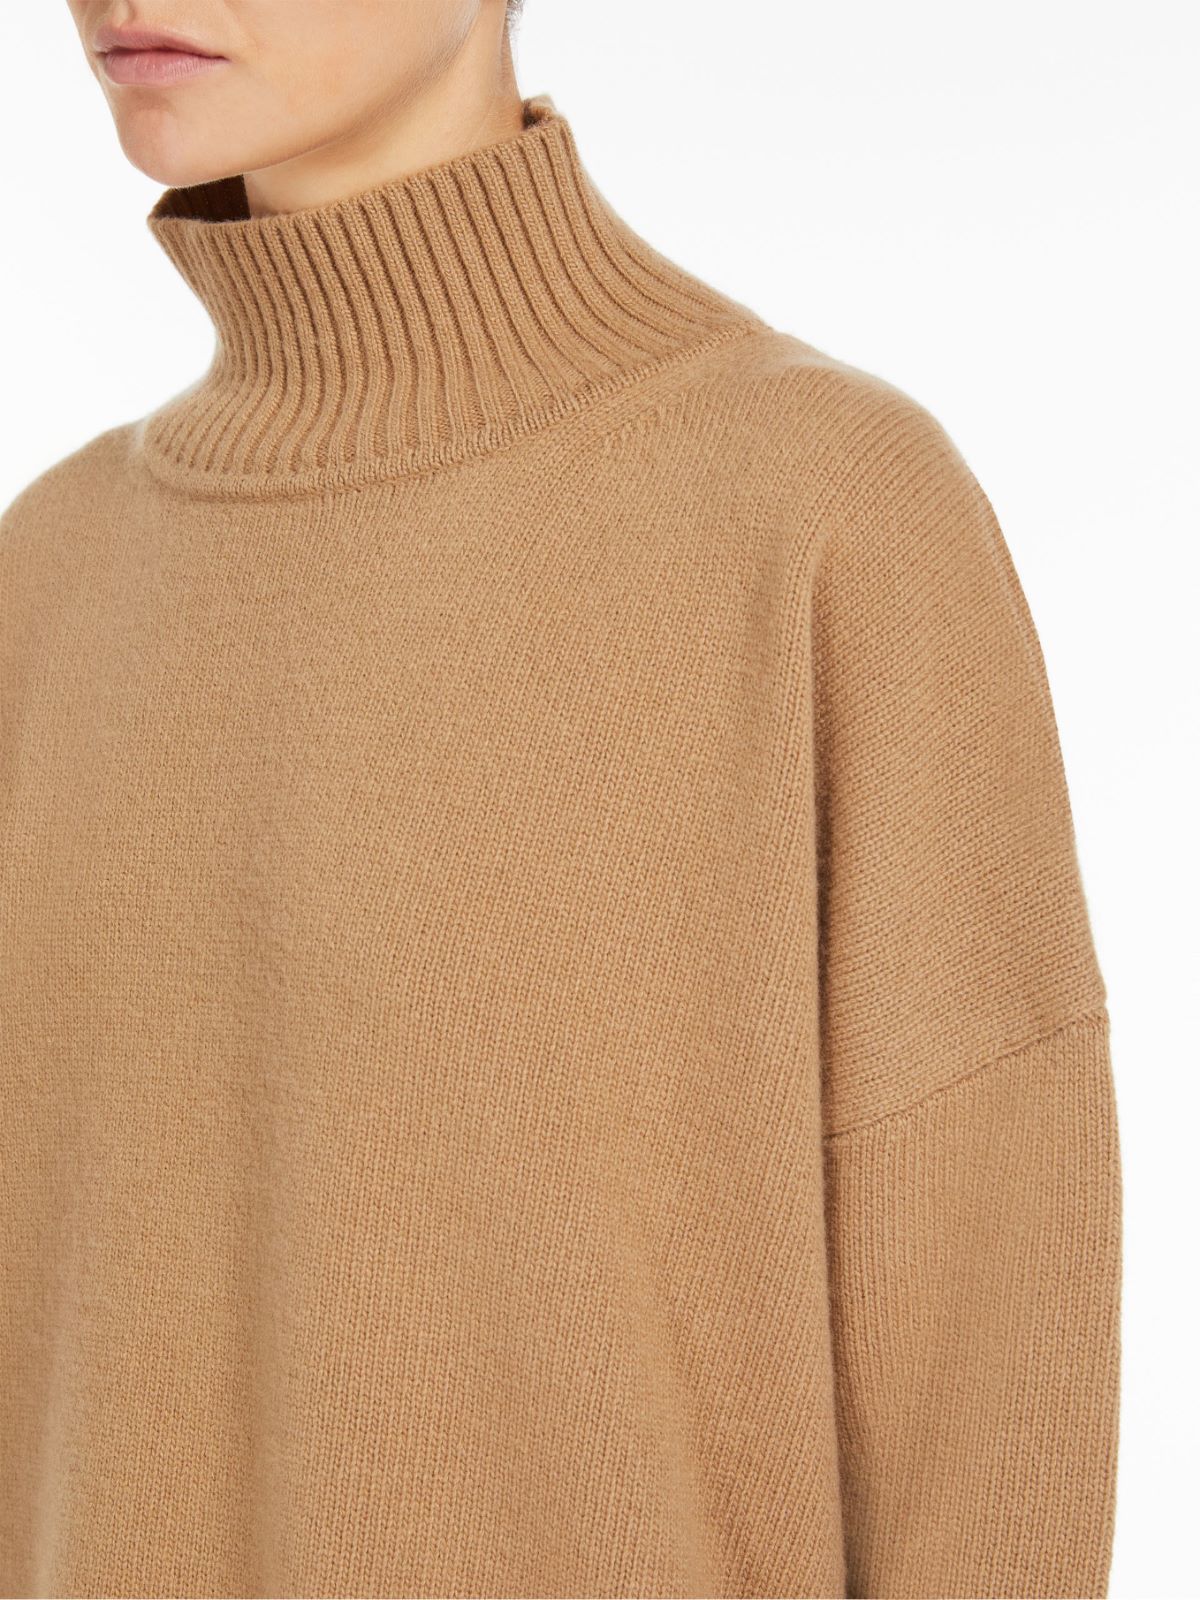 Wool yarn sweater - CAMEL - Weekend Max Mara - 5